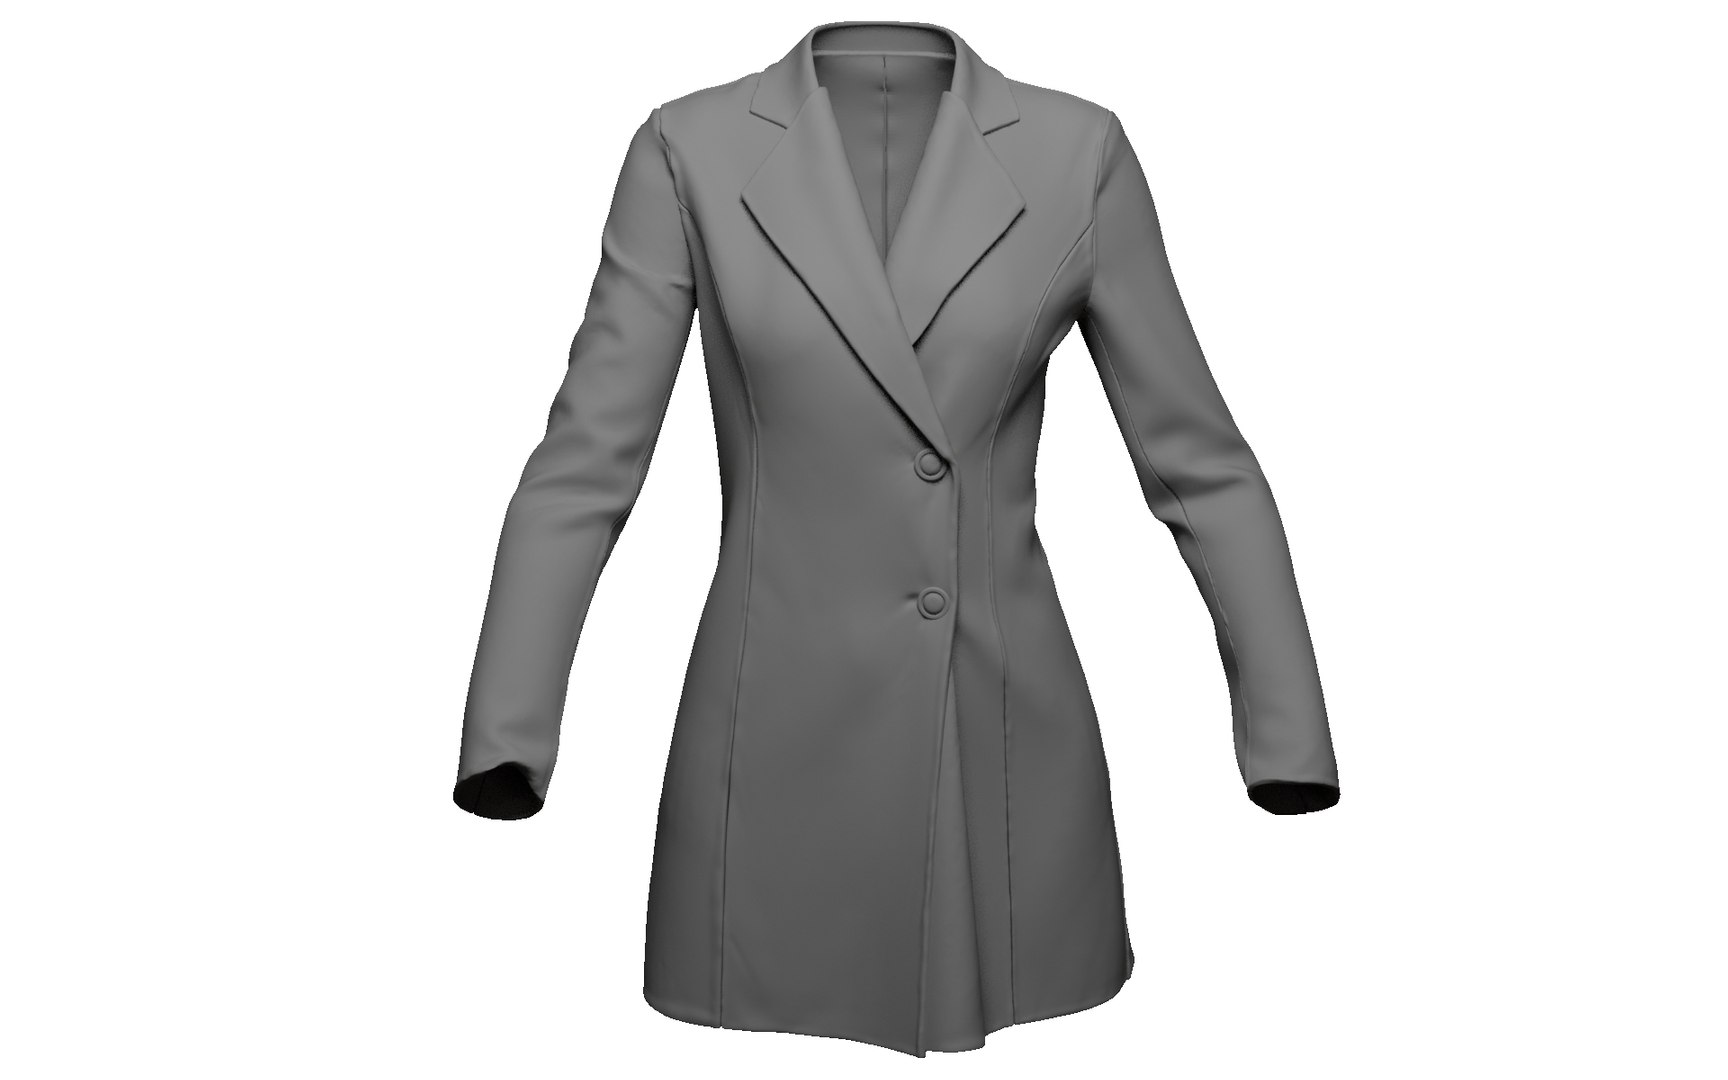 Female coat cloth animation 3D model - TurboSquid 1583973